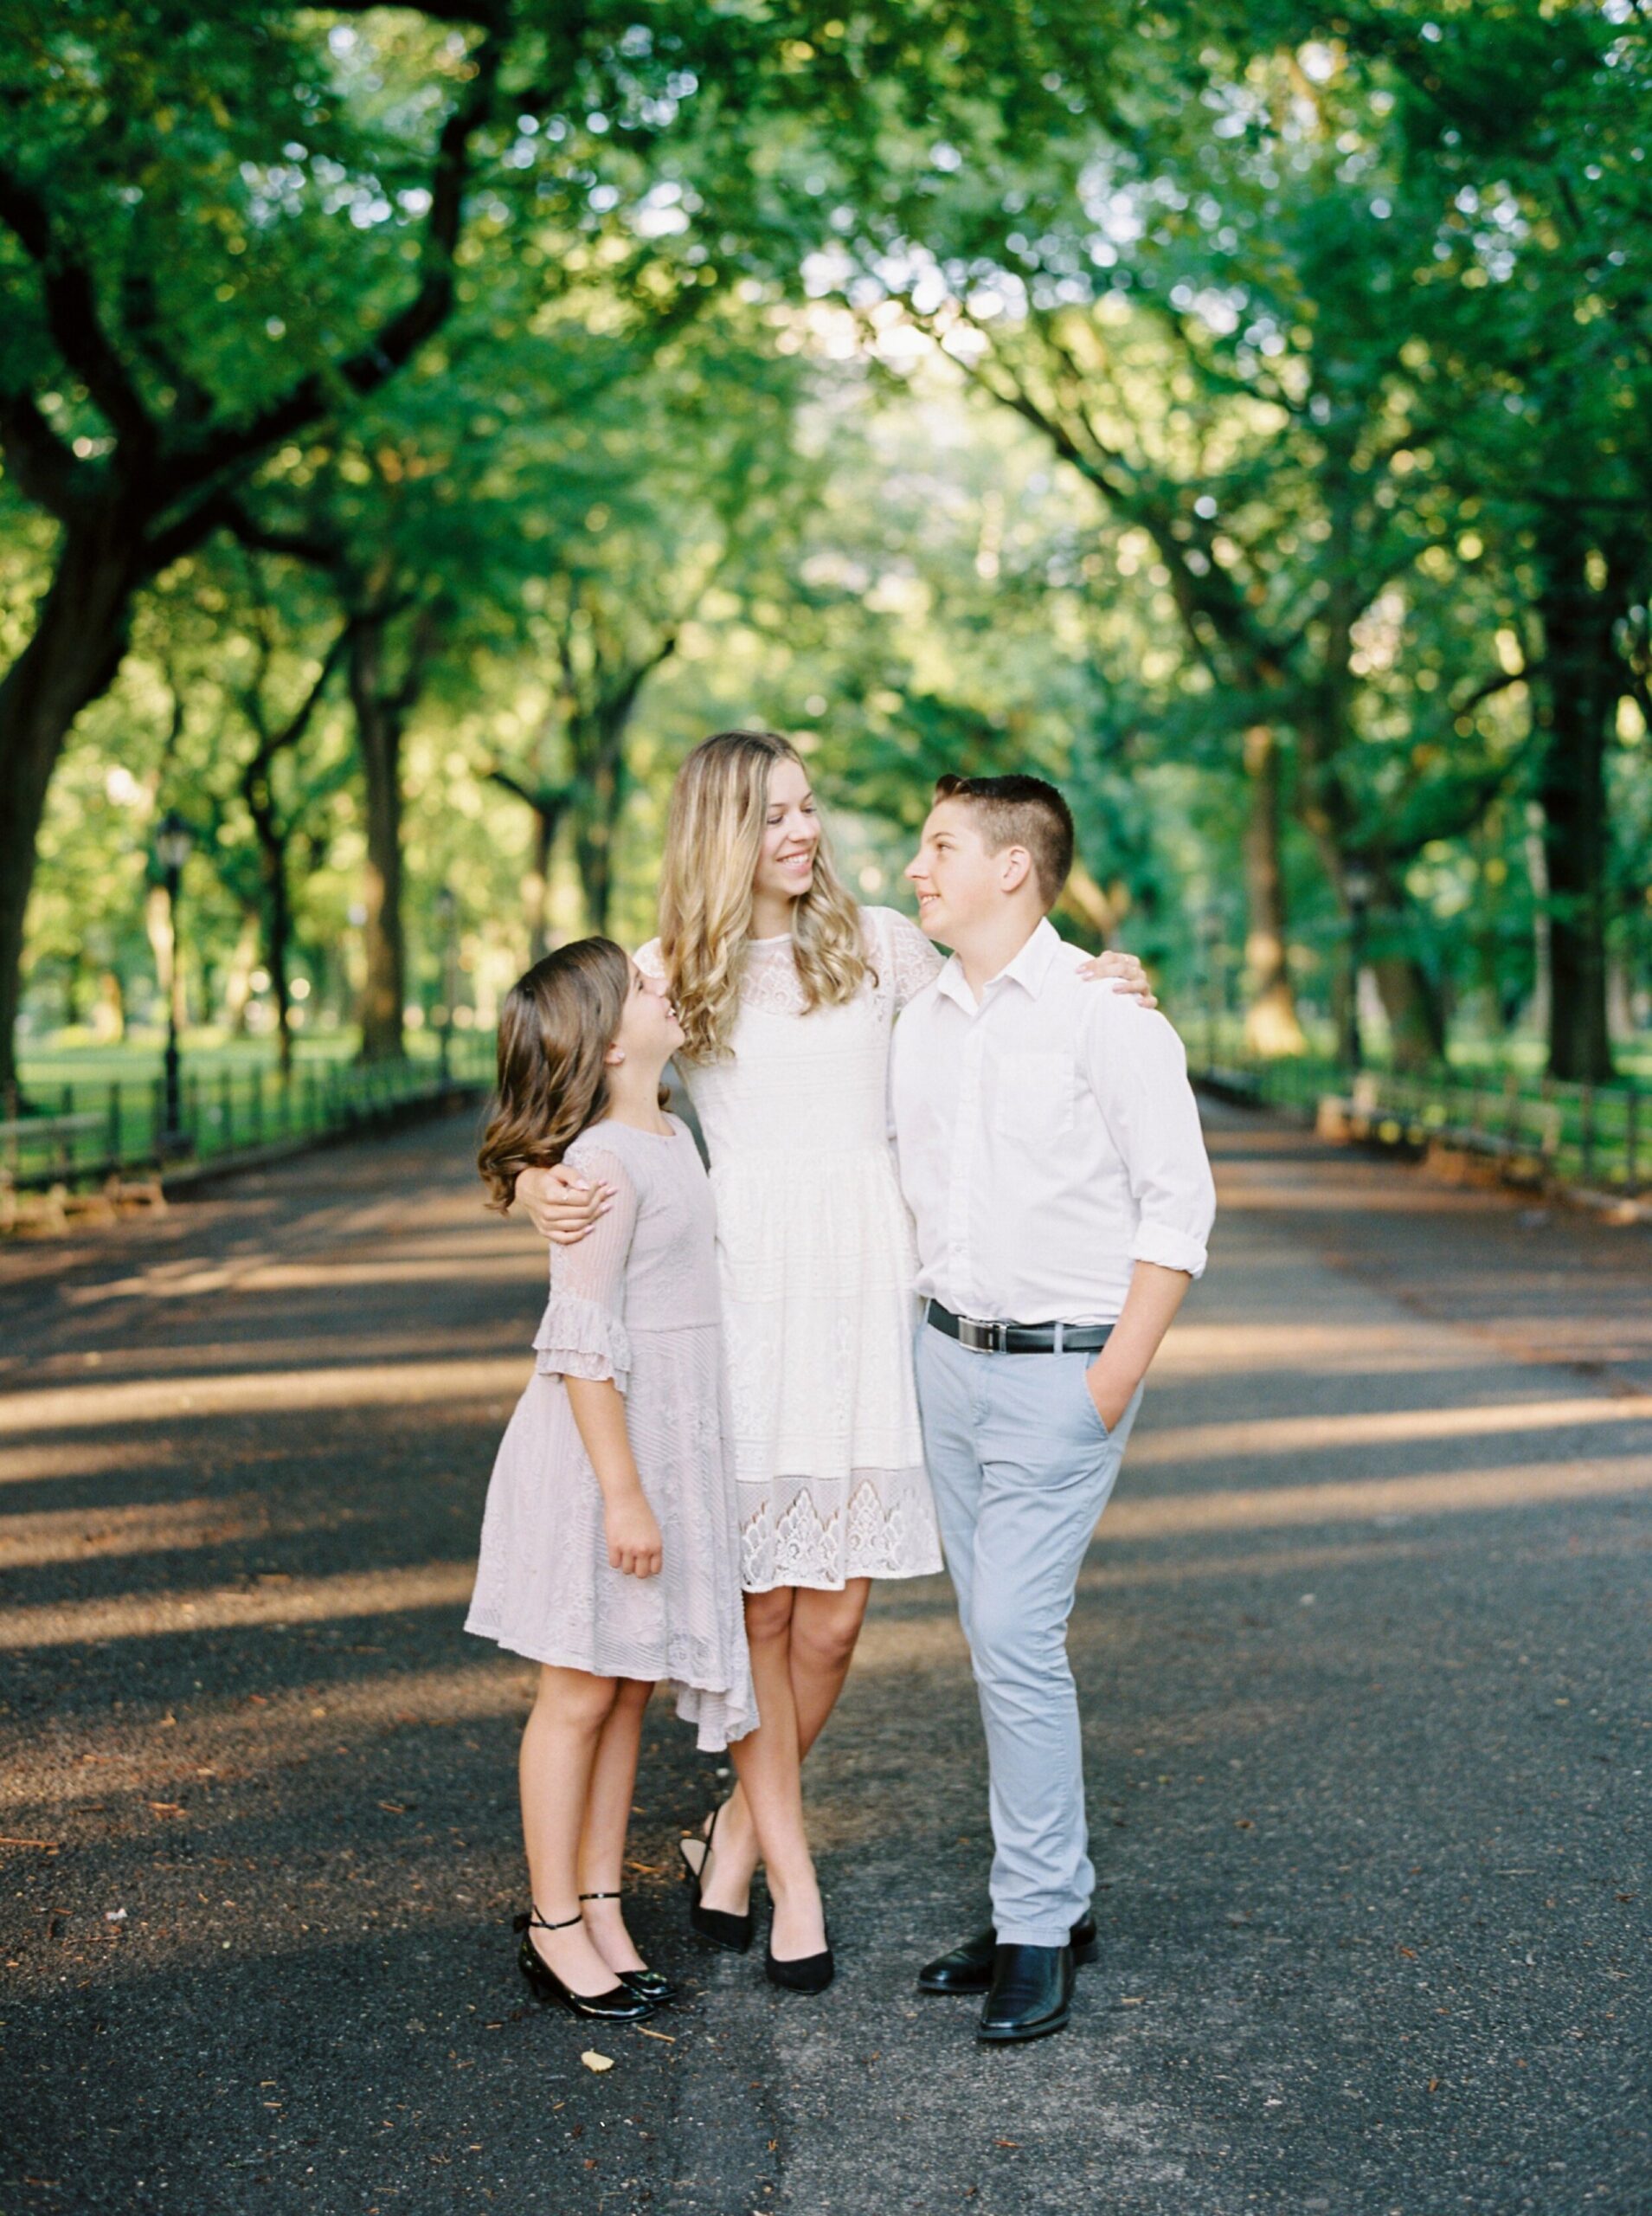 Ney York City Central Park Family Photos